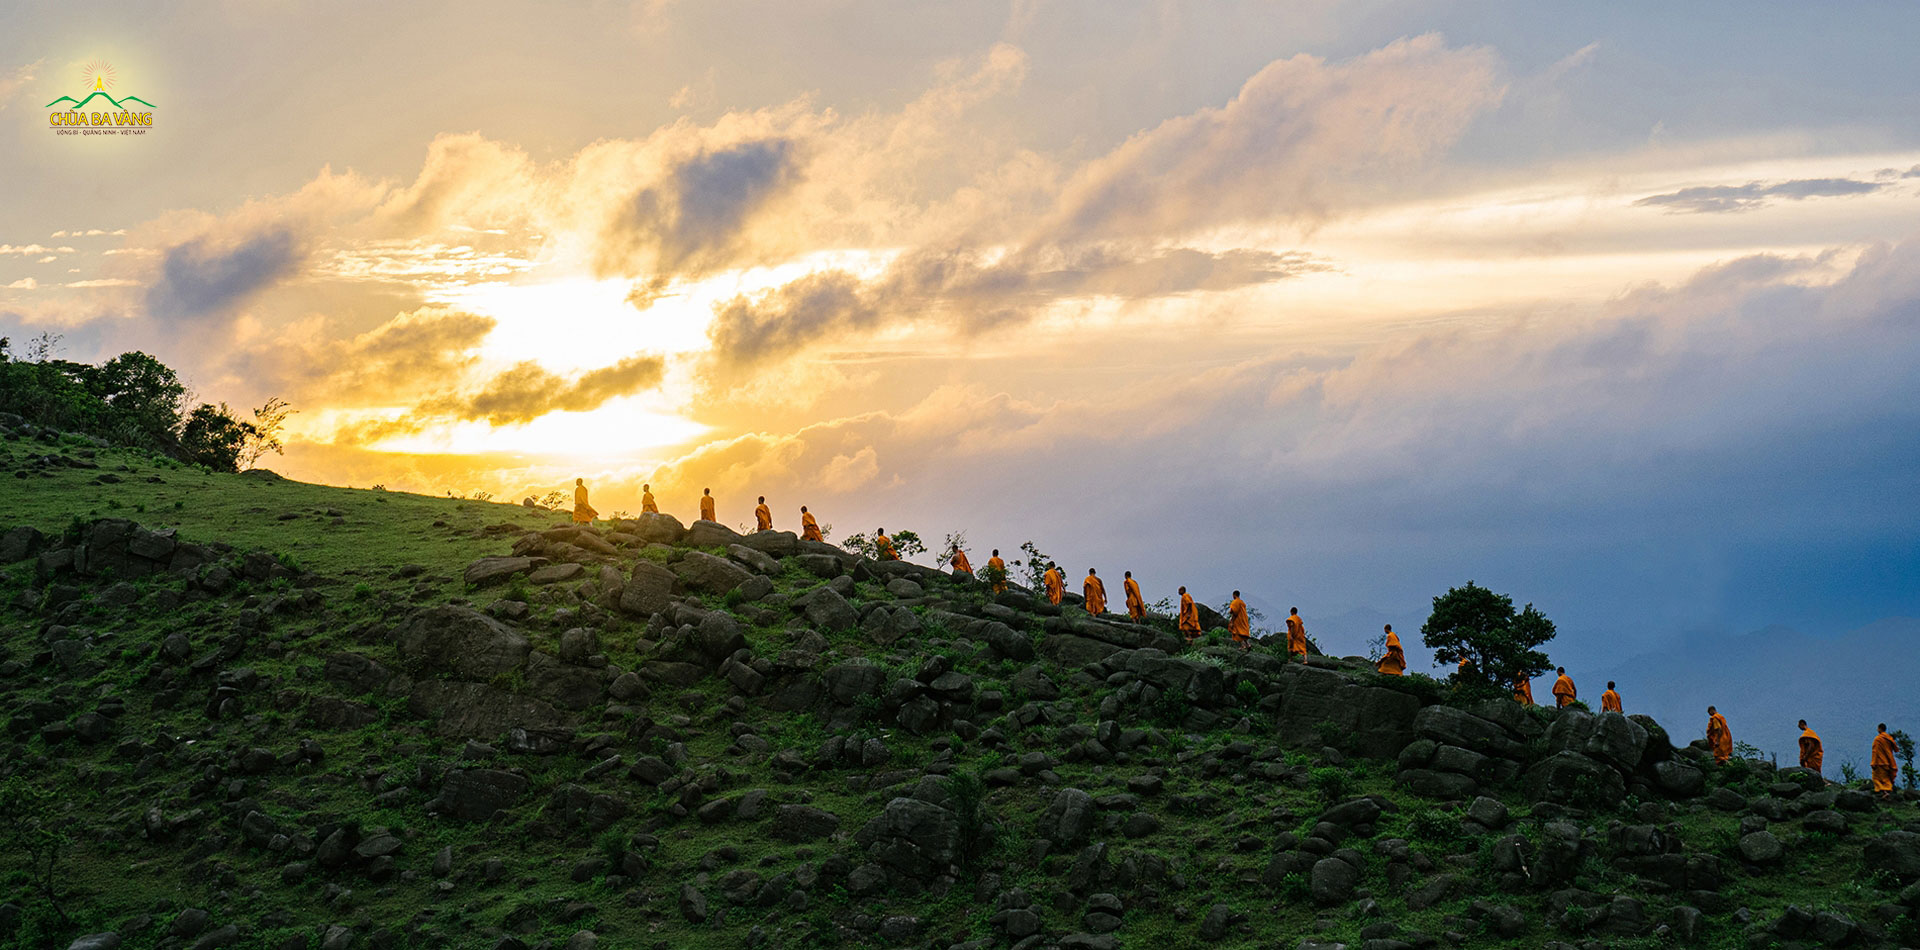 Núi Thành Đẳng - nơi có dấu chân của Thánh tổ Trần Nhân Tông - cũng là nơi chư Tăng chùa Ba Vàng tu tập hạnh đầu đà